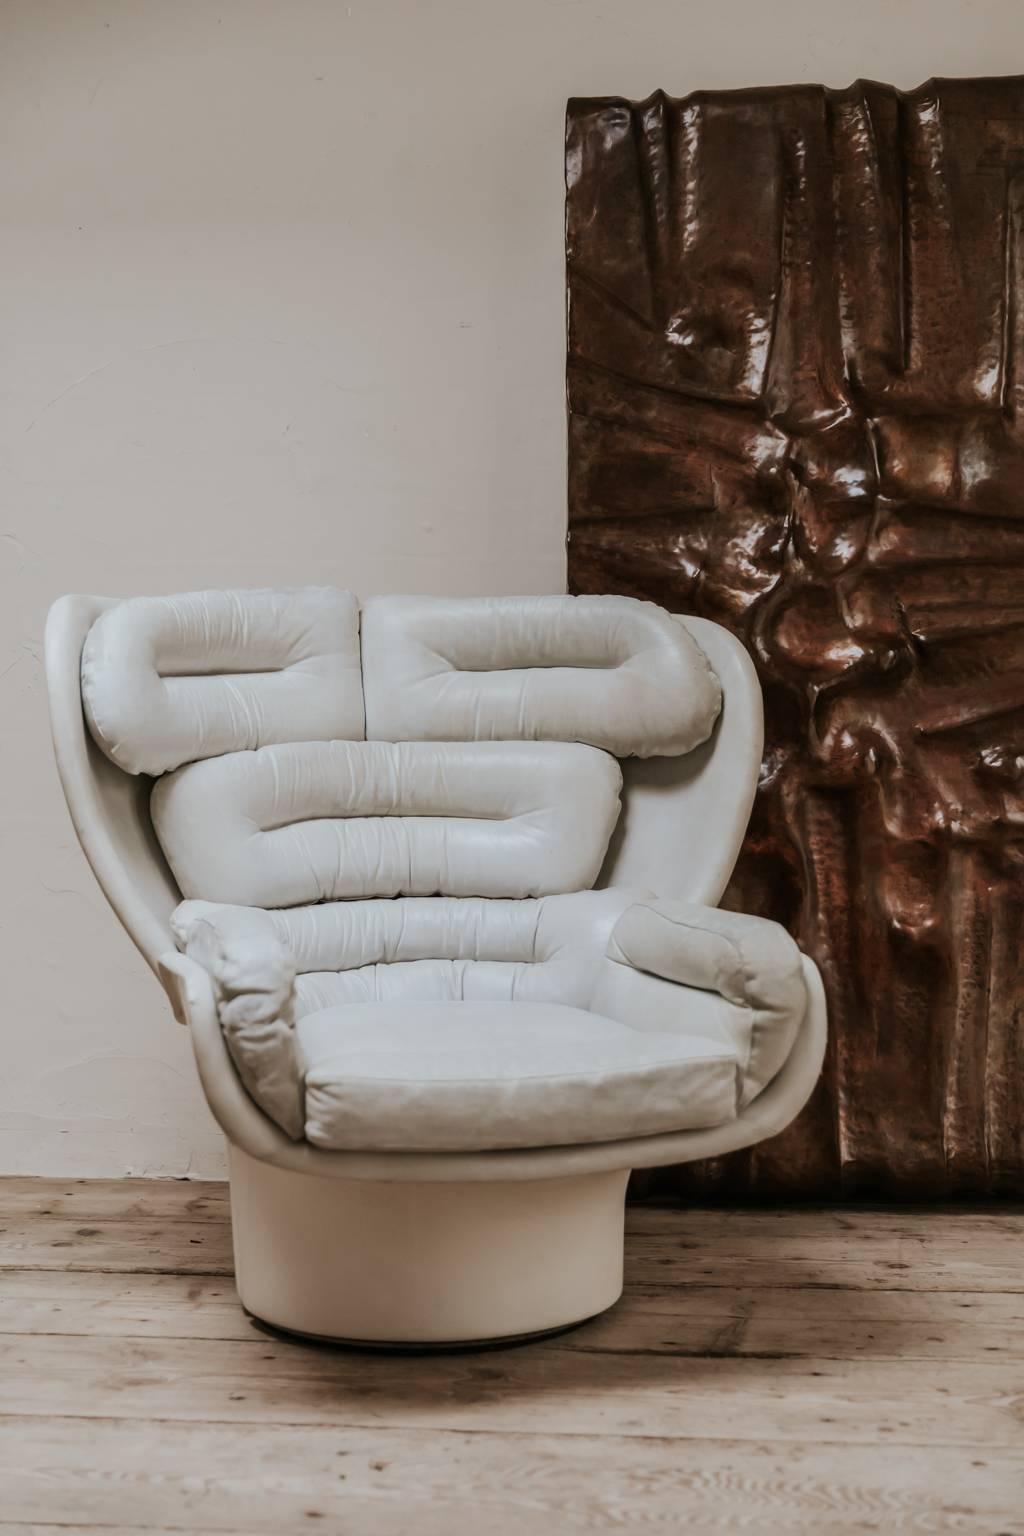 Der Loungesessel Elda wurde 1963 entworfen und besteht aus einer Fiberglasschale mit drehbarem Fuß, der Sitz ist mit weißem Leder gepolstert. Das von Joe Colombo entworfene Kultobjekt war für seine Entstehungszeit sehr futuristisch gestaltet.